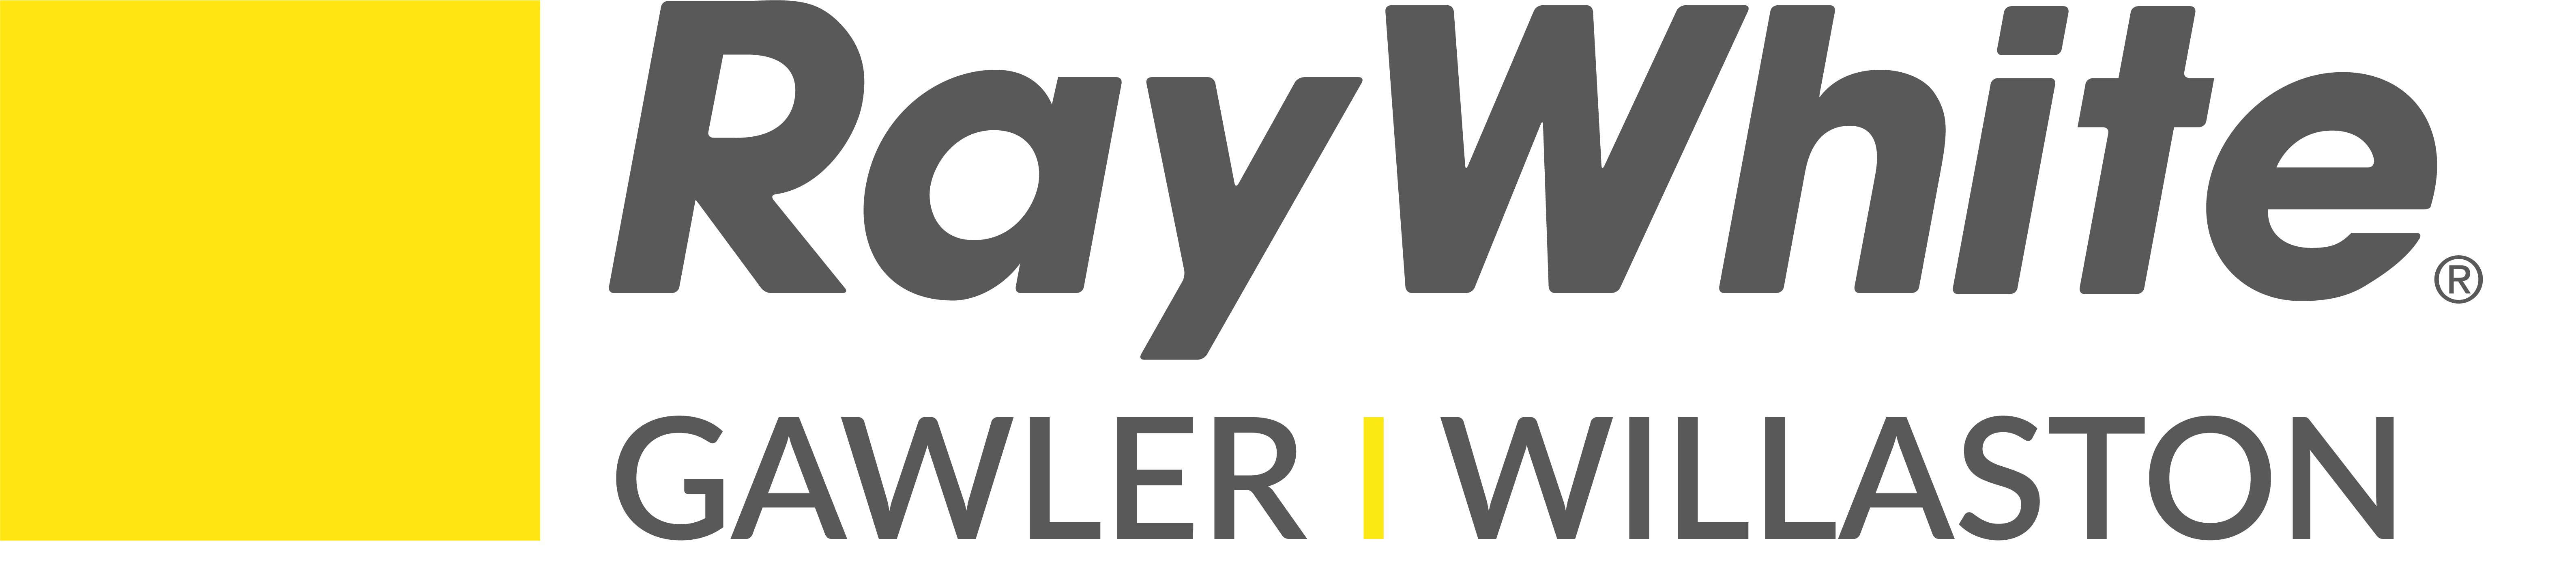 Ray White - sponsorship - Gawler Willaston logo RGB